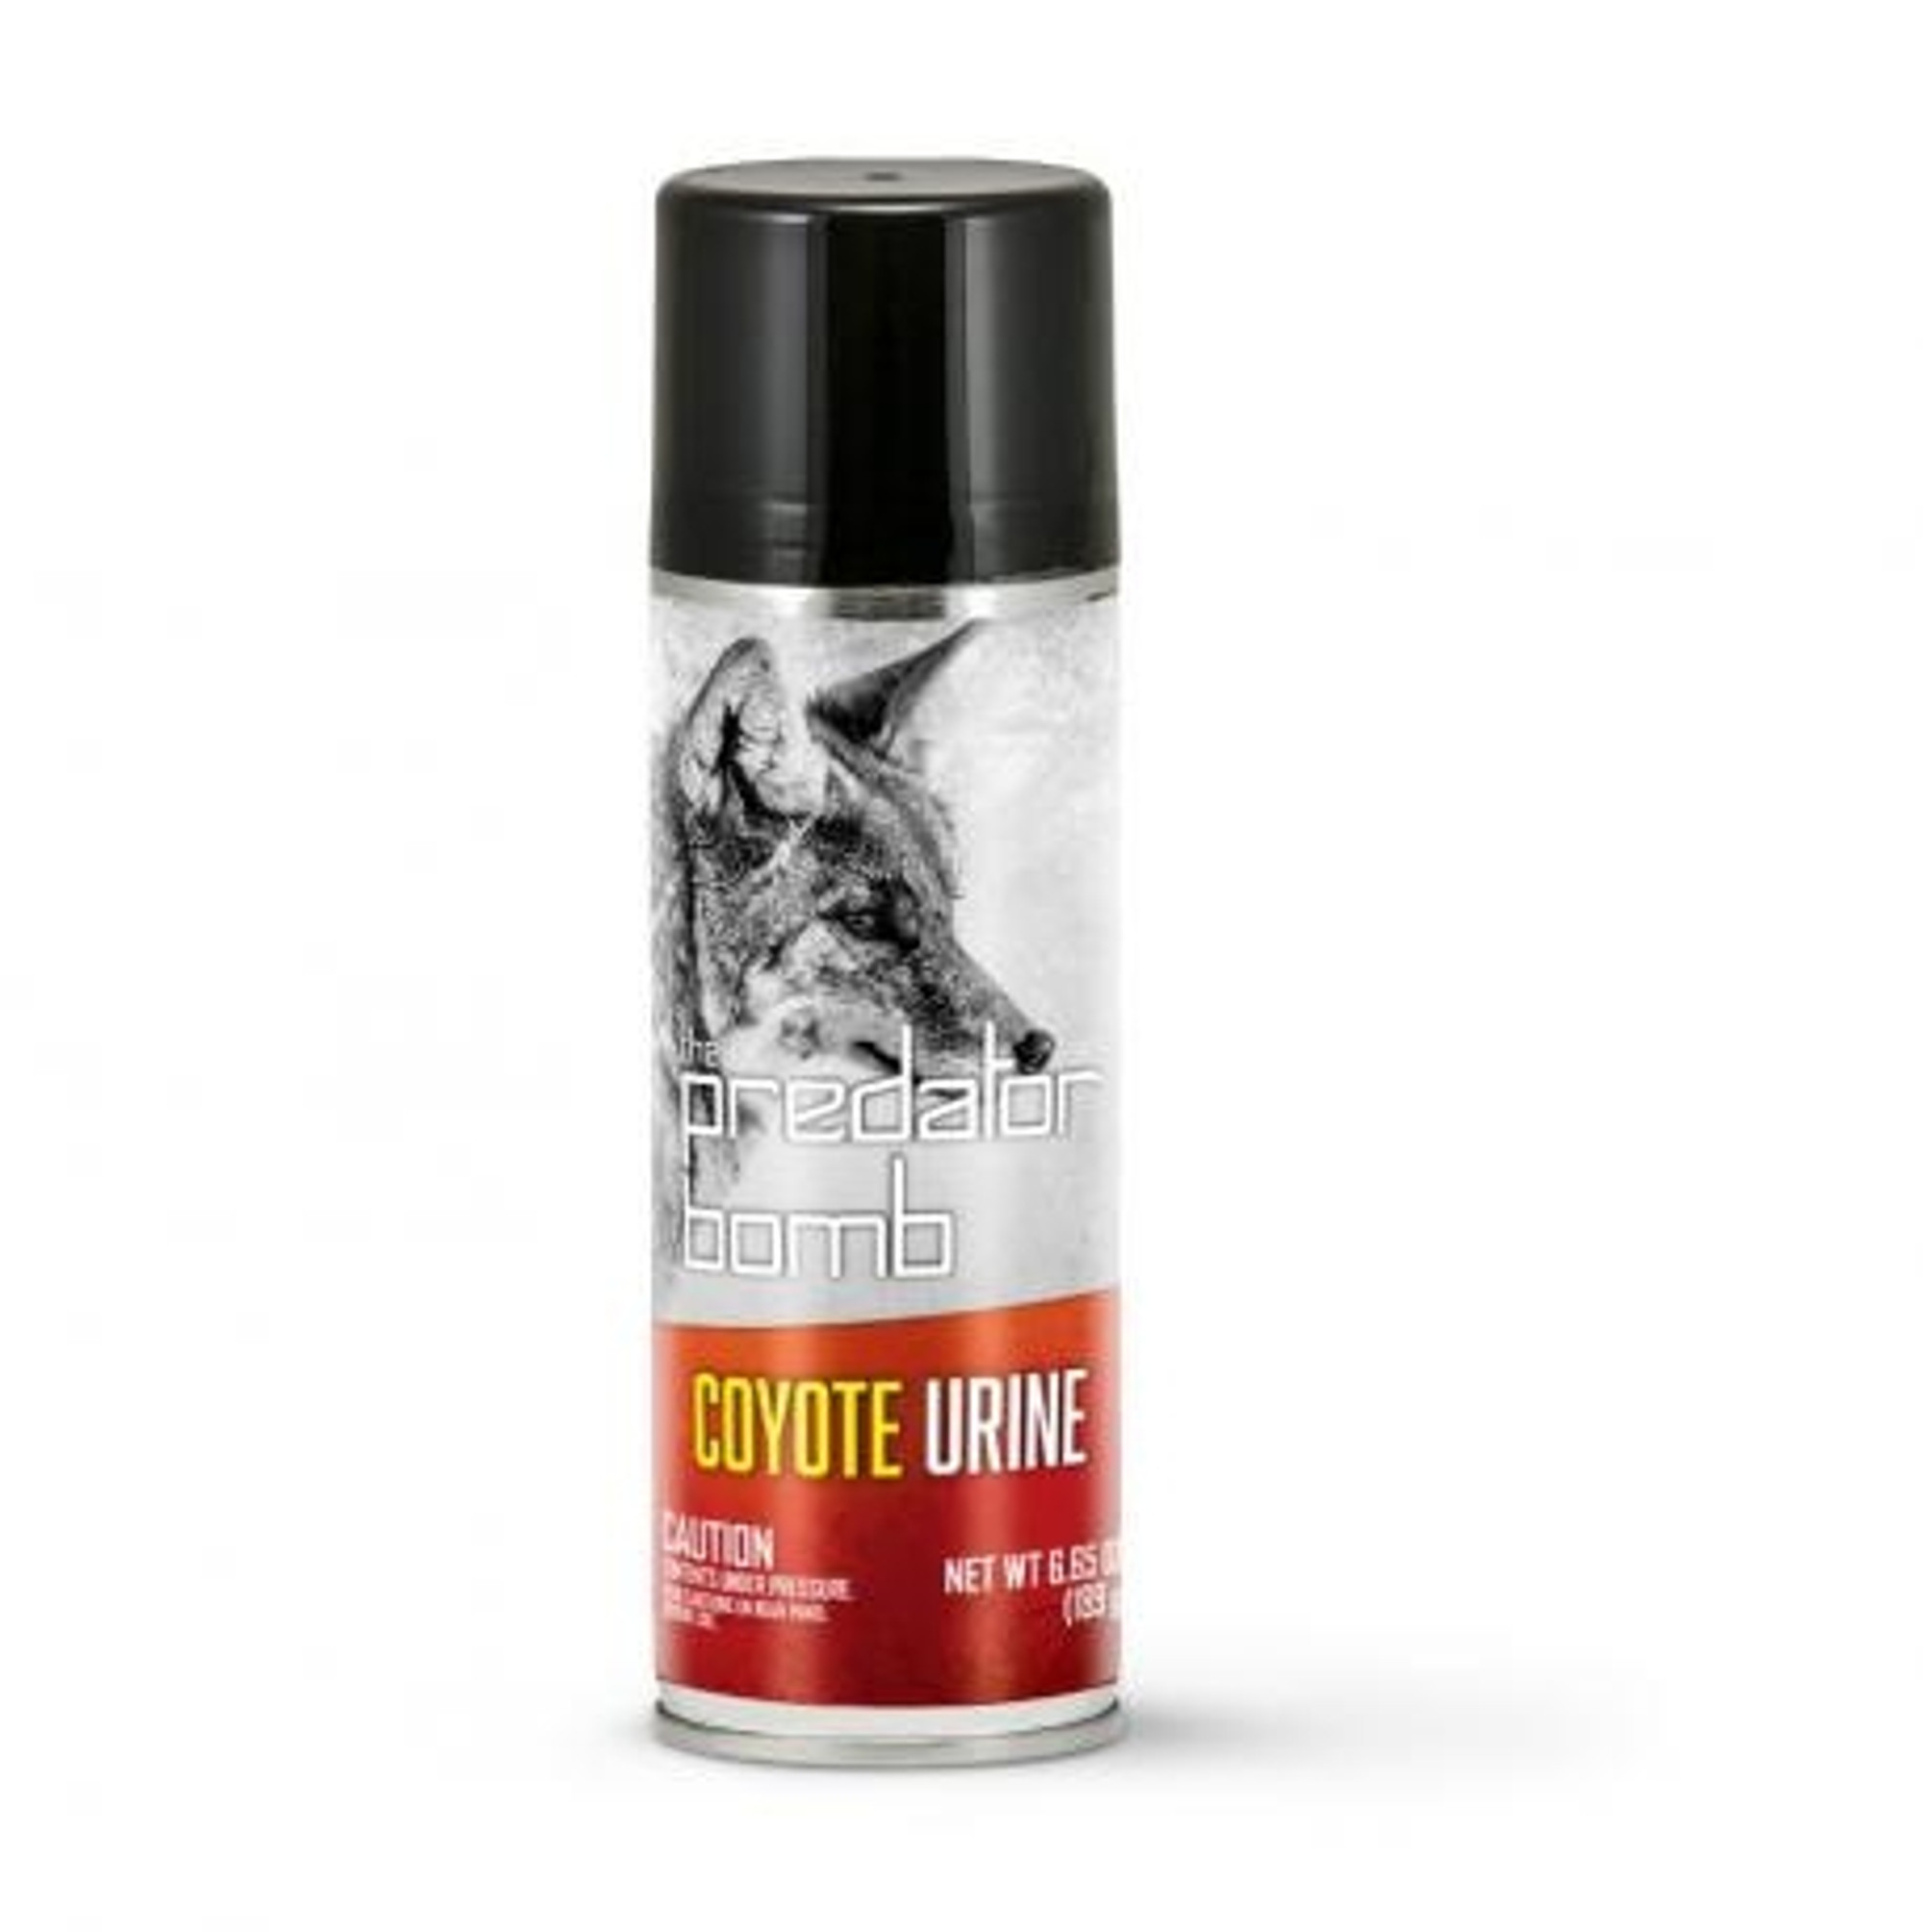 Coyote Urine Predator Bomb